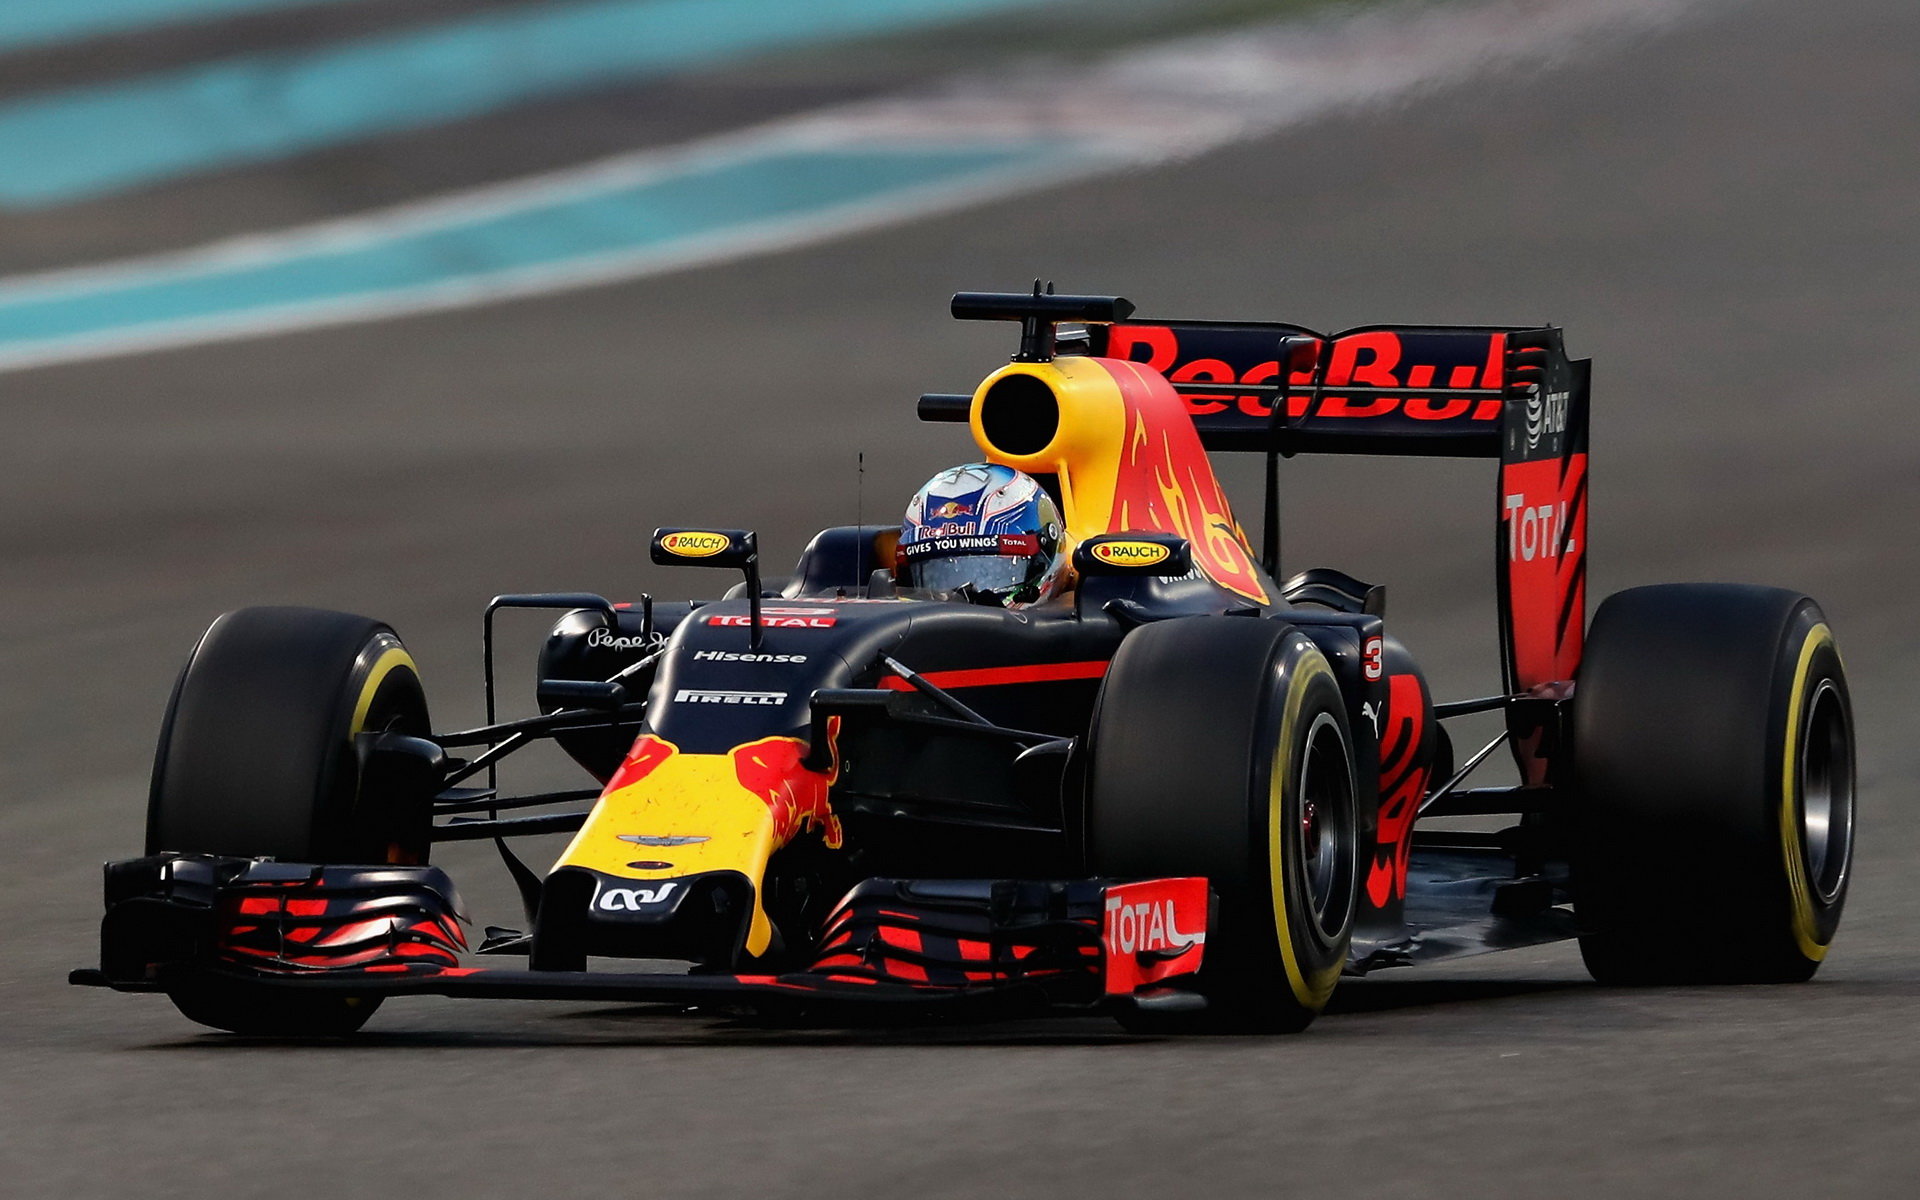 Daniel Ricciardo v závodě v Abú Zabí